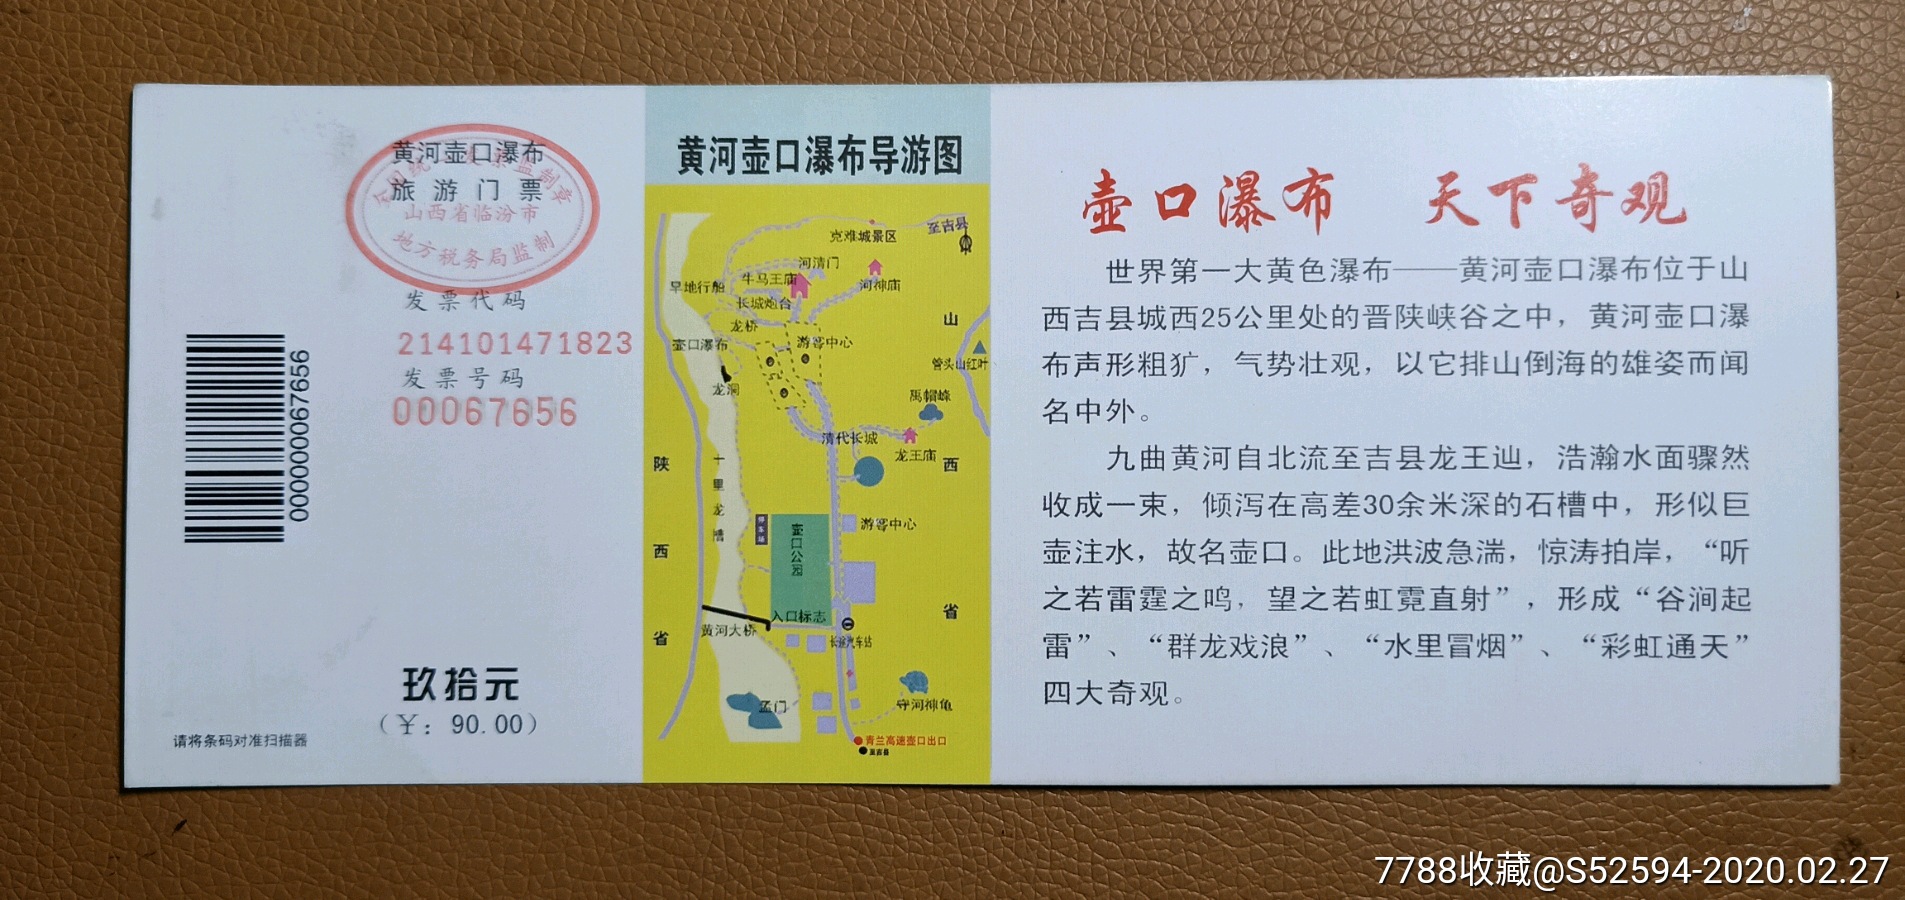 夜游凤城河风景区门票图片